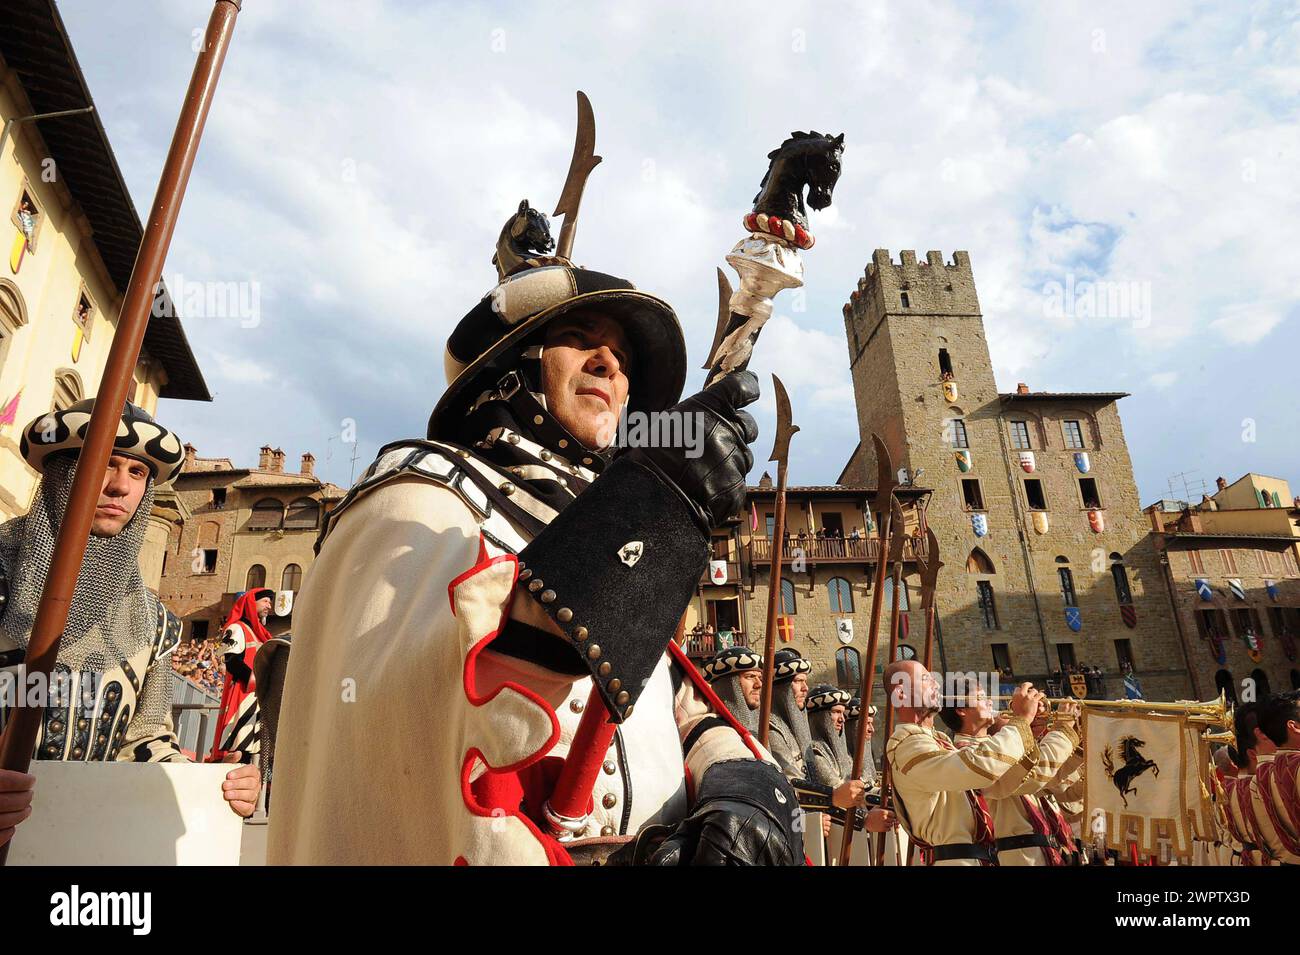 Giostra del saracino di Arezzo, rievocazione storica/Arezzo's Saracen Joust, historical evocation Stock Photo